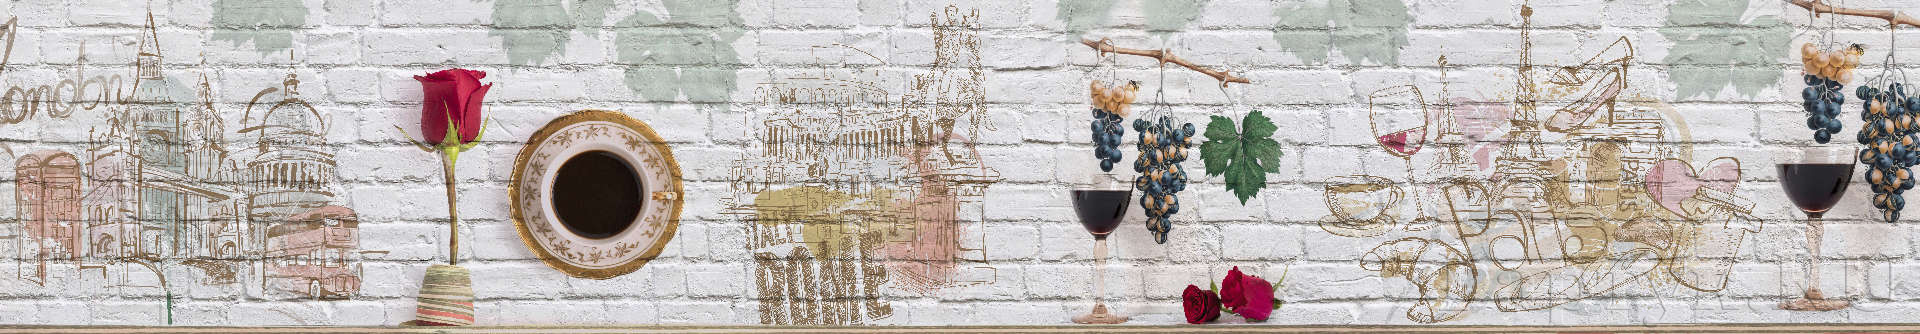 Графические рисунки: вино и виноград